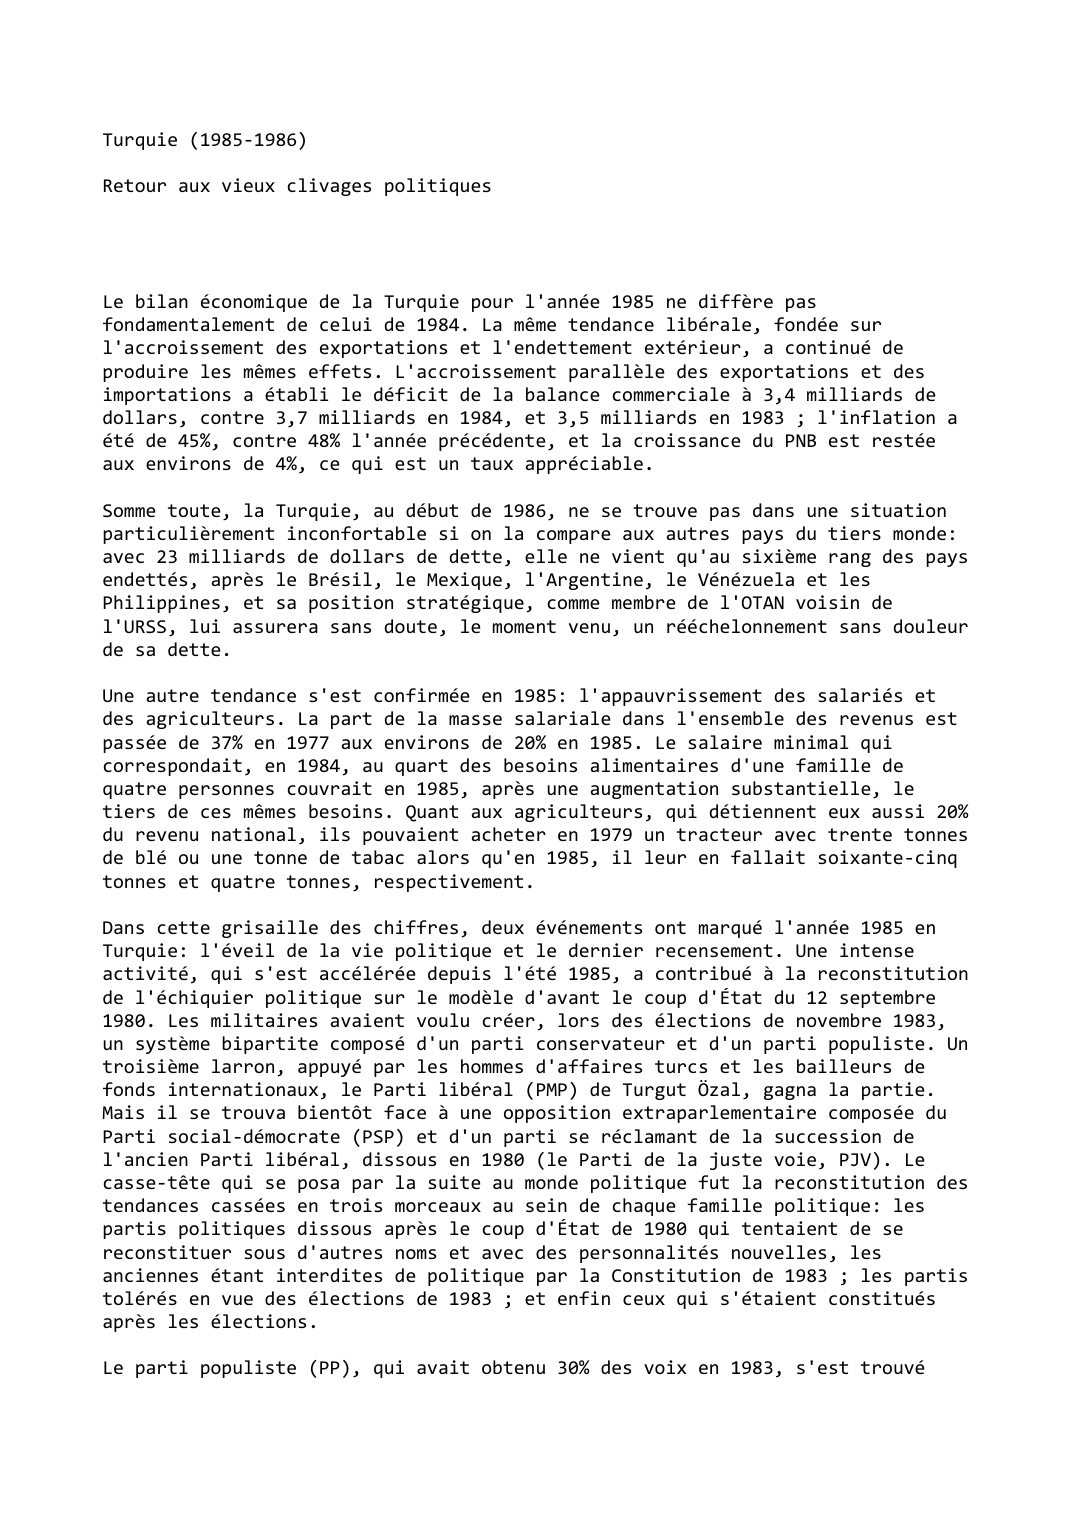 Prévisualisation du document Turquie (1985-1986)

Retour aux vieux clivages politiques